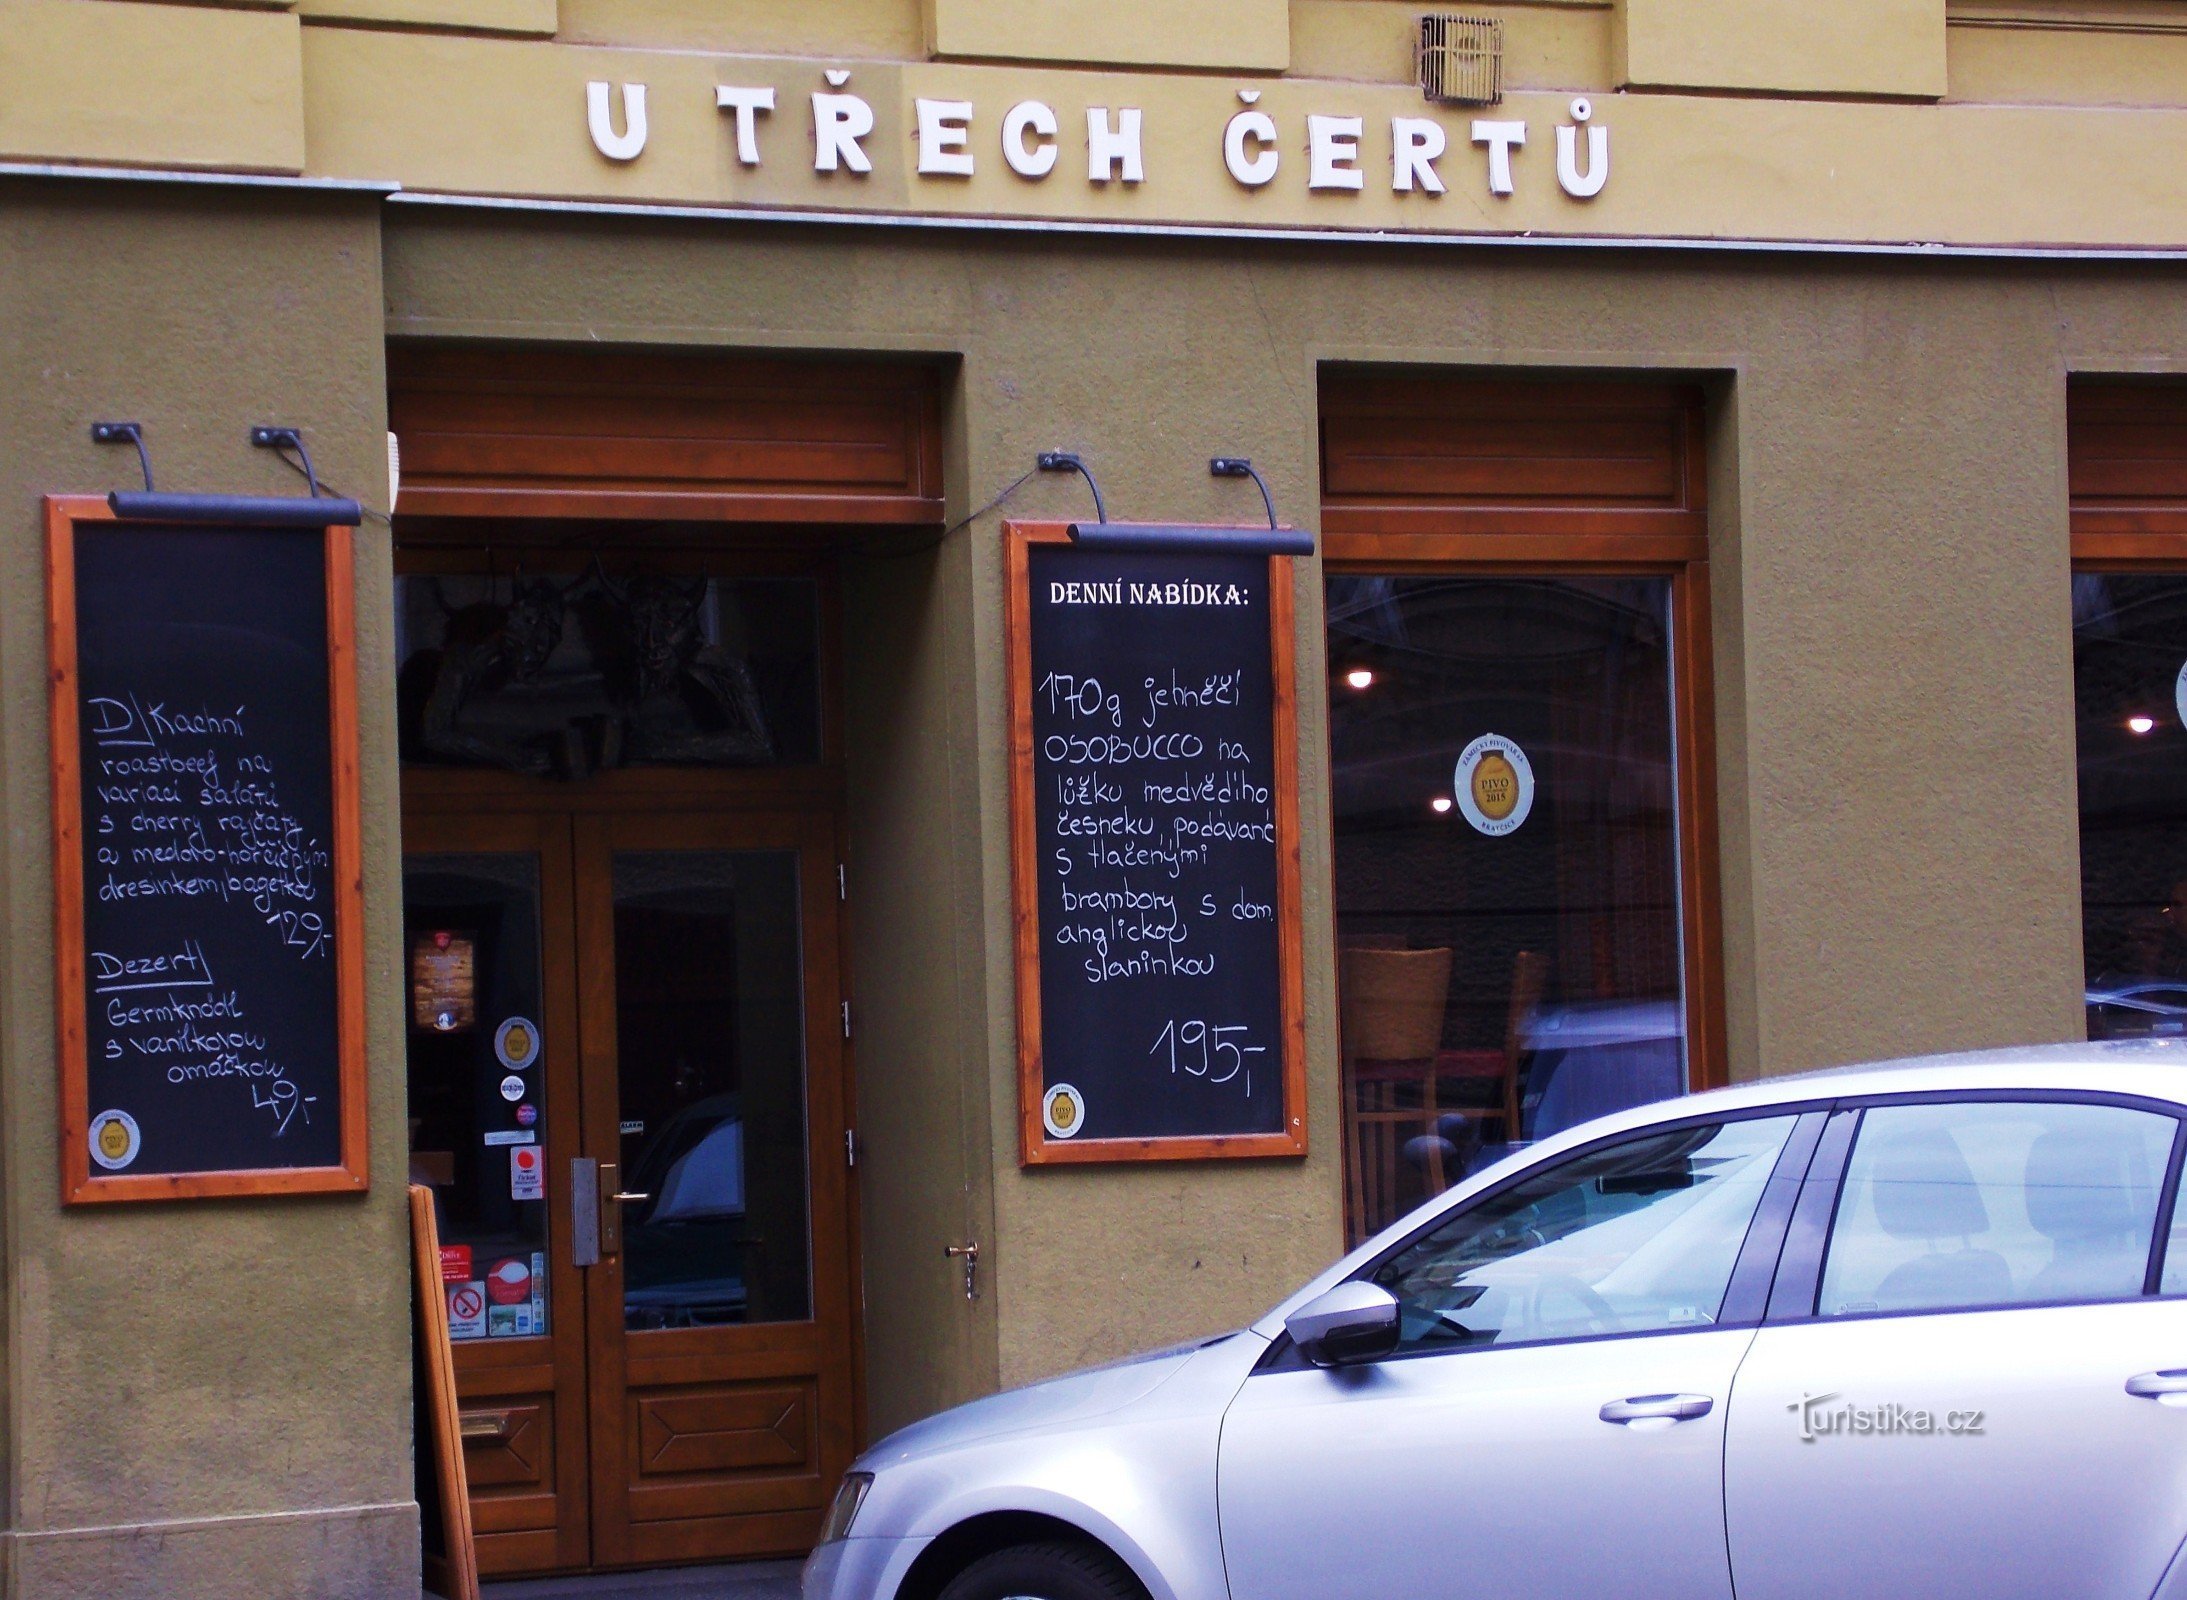 Al diabólico restaurante U Třech čertů en el centro de Brno